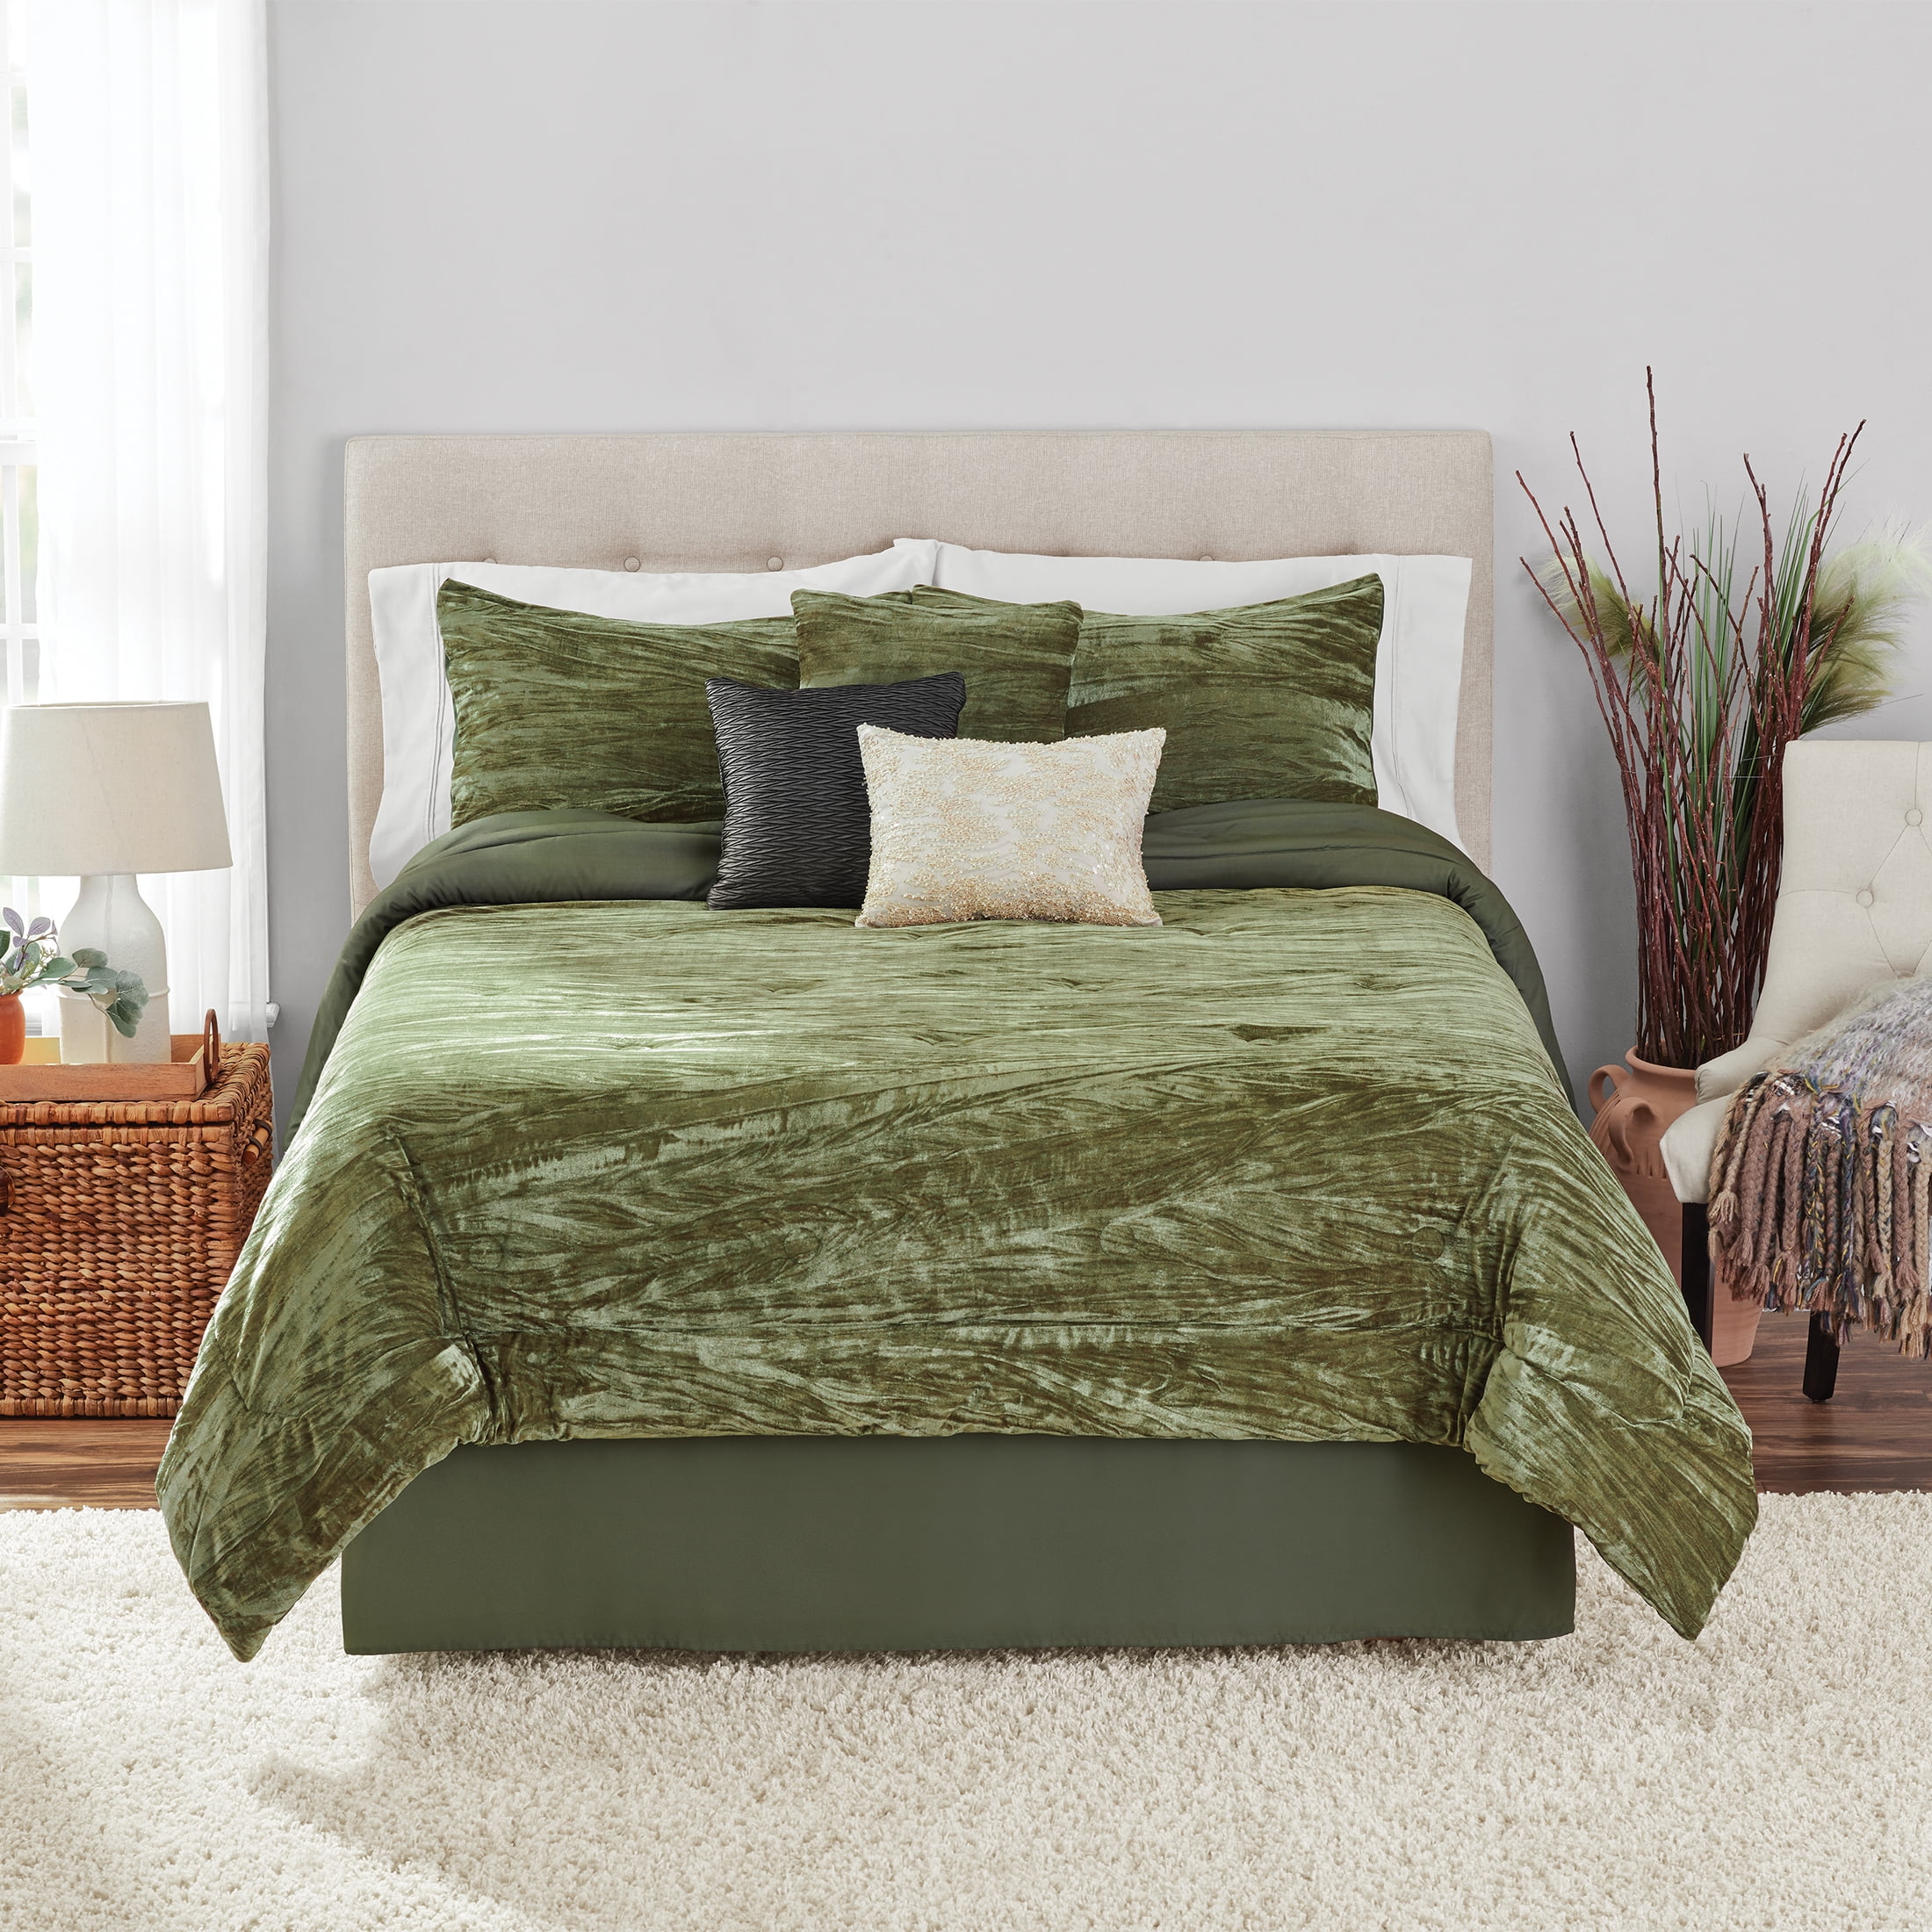 Mainstays 7-Piece Green Crinkle Textured Comforter Set, Full/Queen